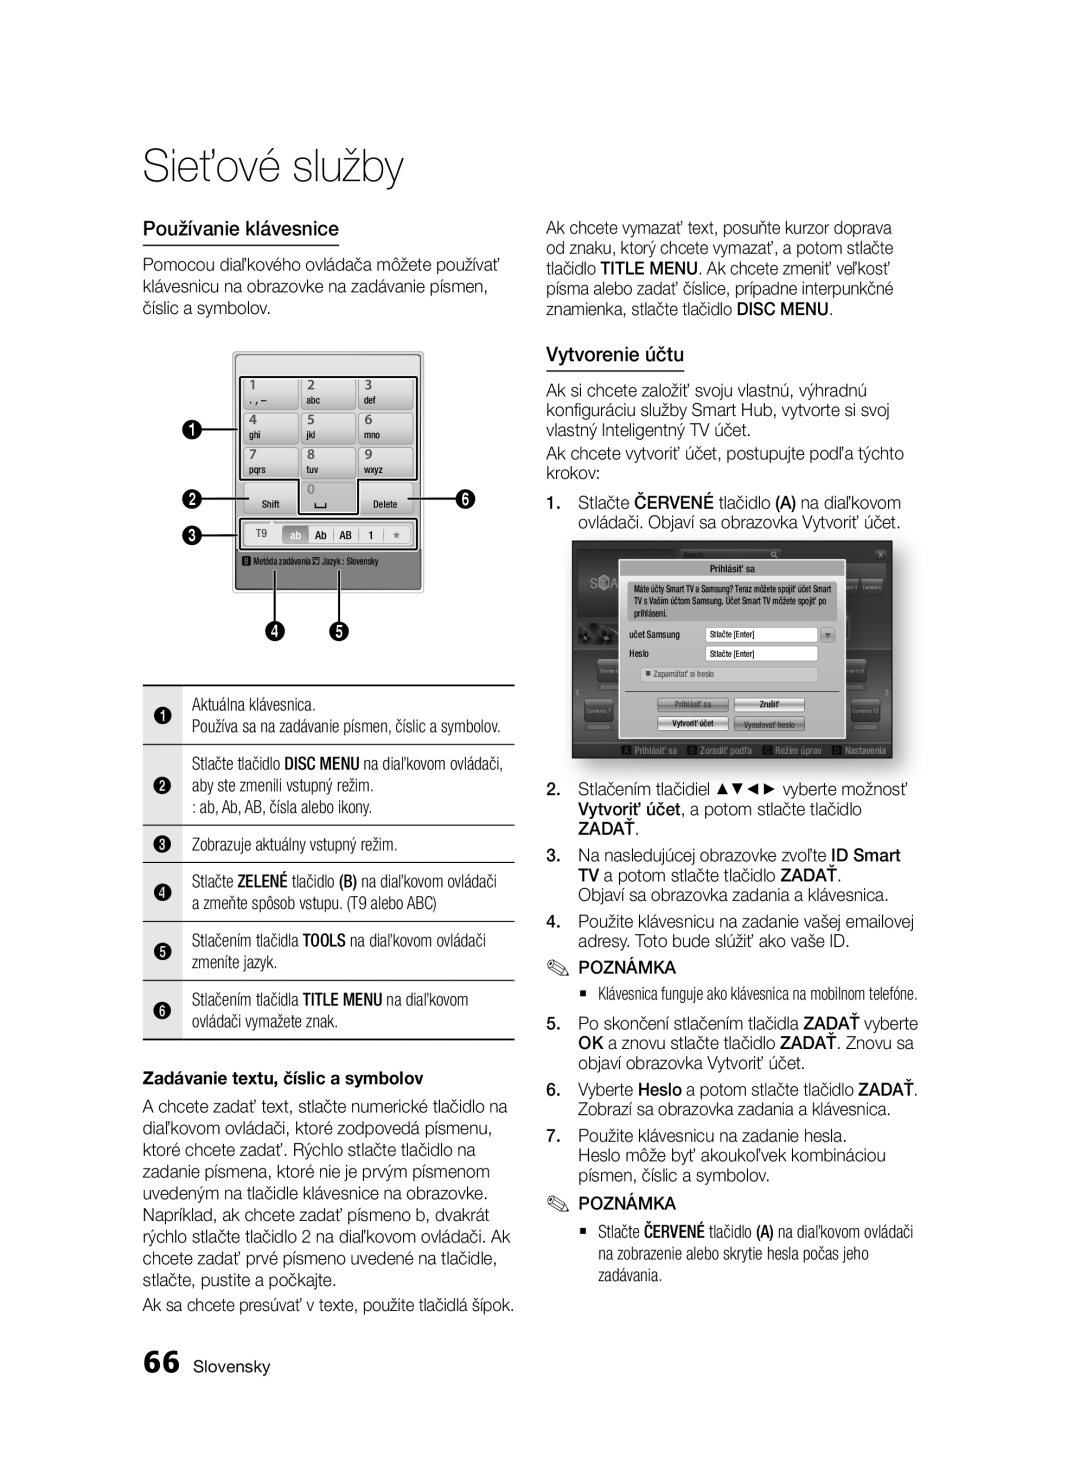 Samsung BD-E6300/EN Používanie klávesnice, Vytvorenie účtu, Zadávanie textu, číslic a symbolov, Sieťové služby, Slovensky 